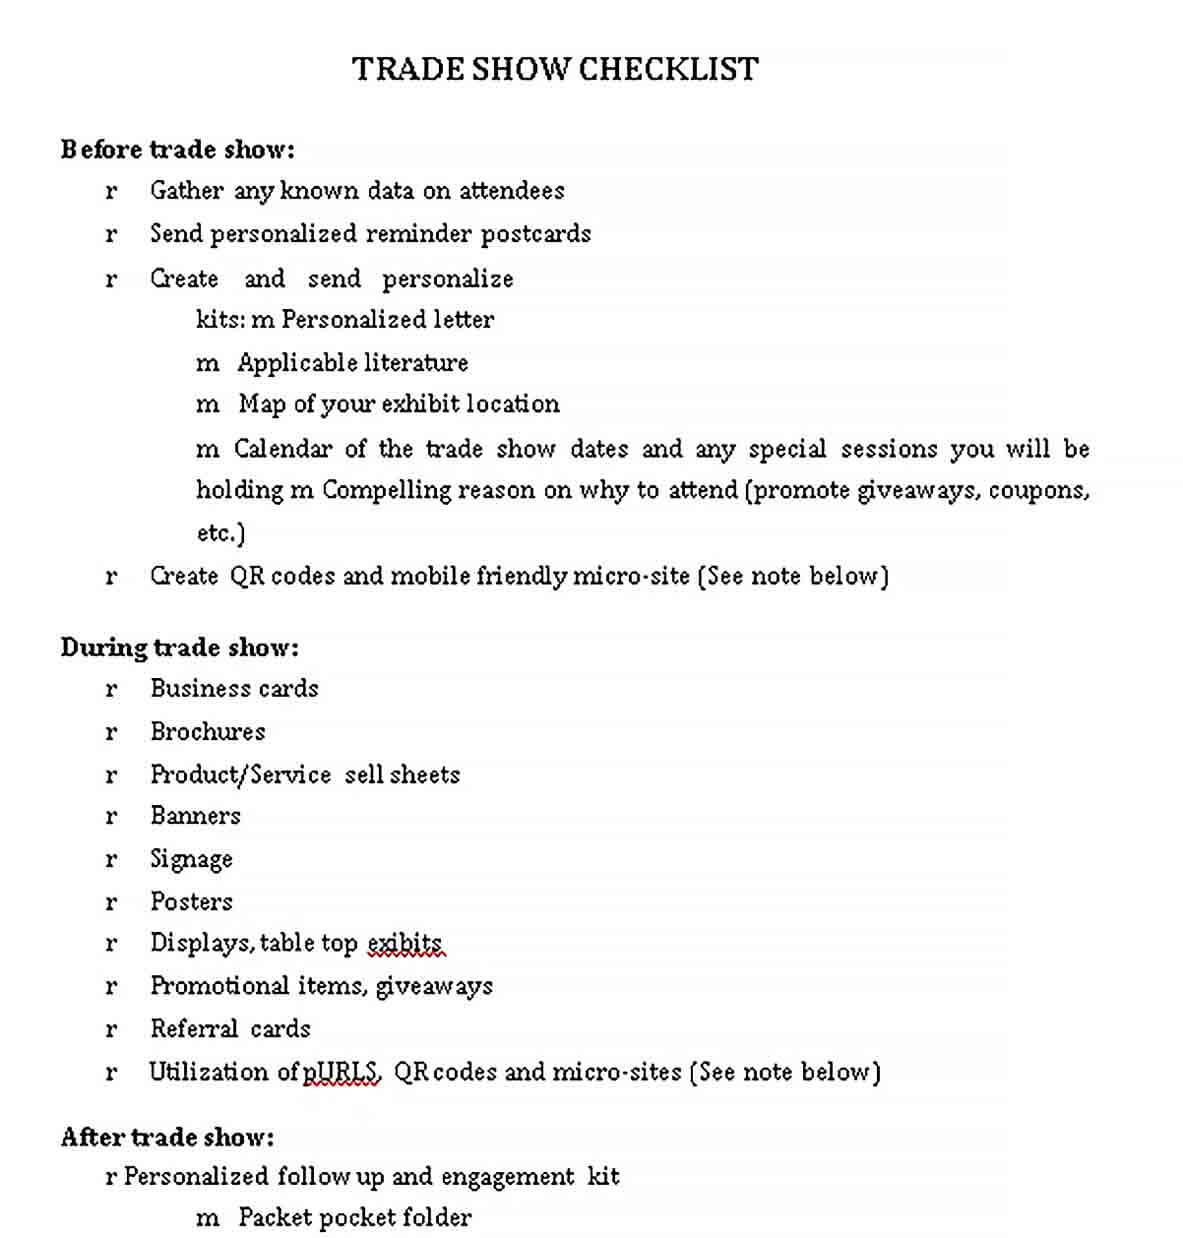 Sample Trade Show Checklist in PDF